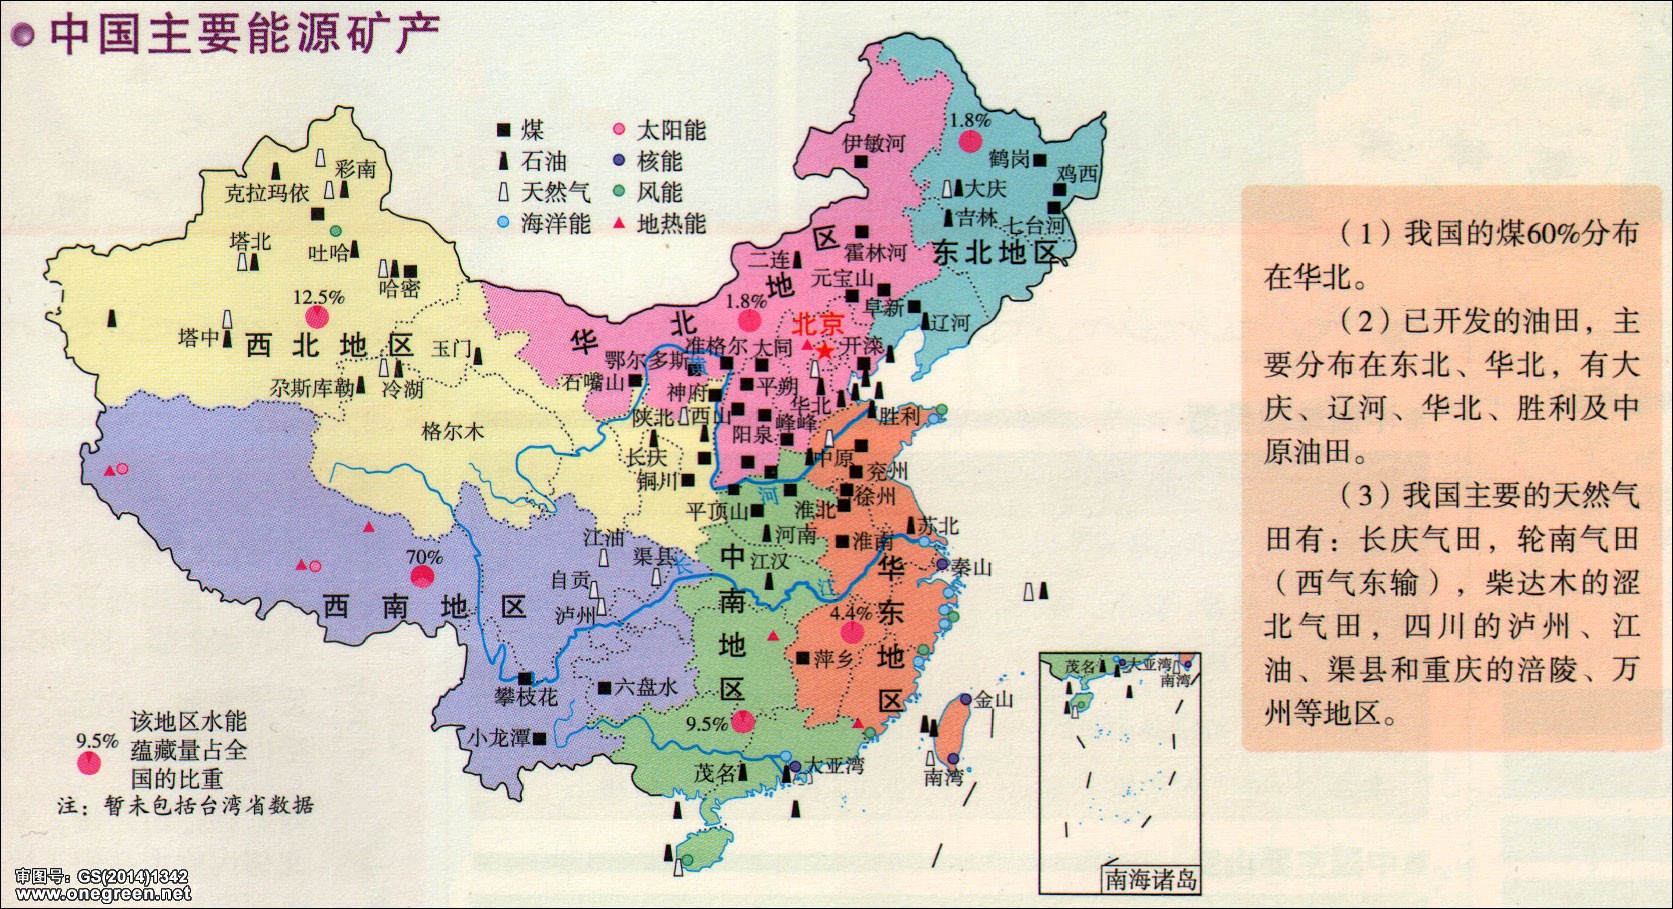 中国主要矿产分布图